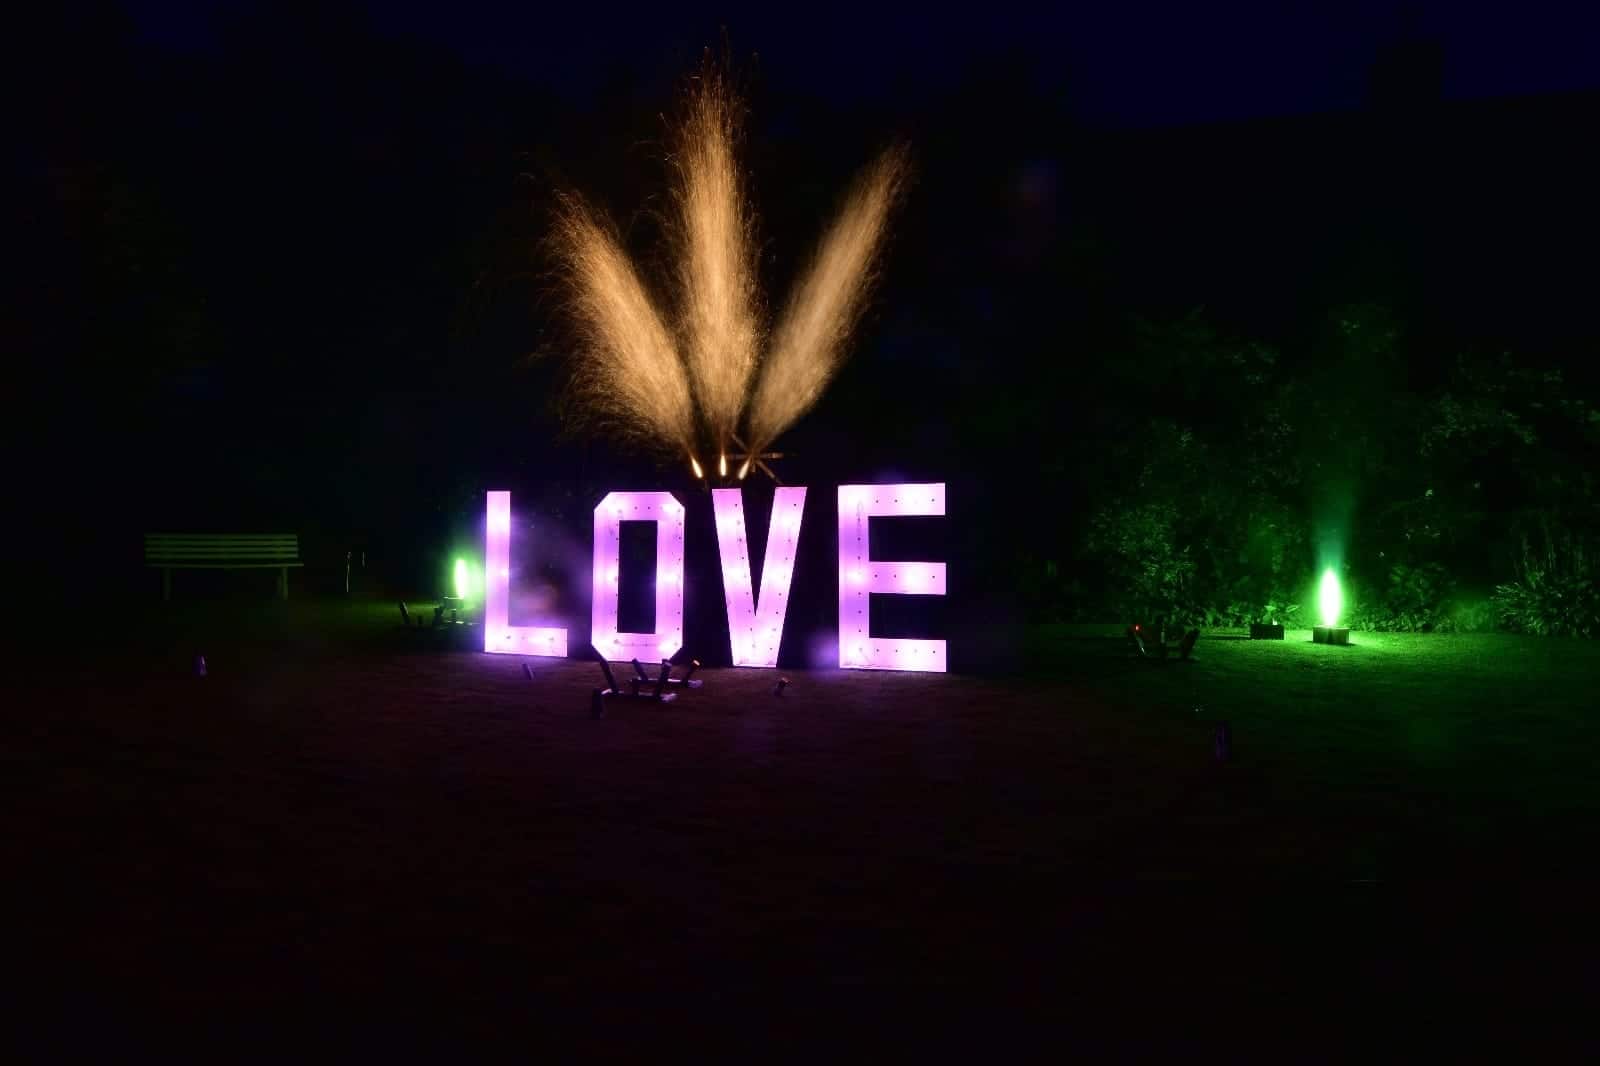 Ein Feuerwerks Lichtbild dass die Buchstaben LOVE zeigt